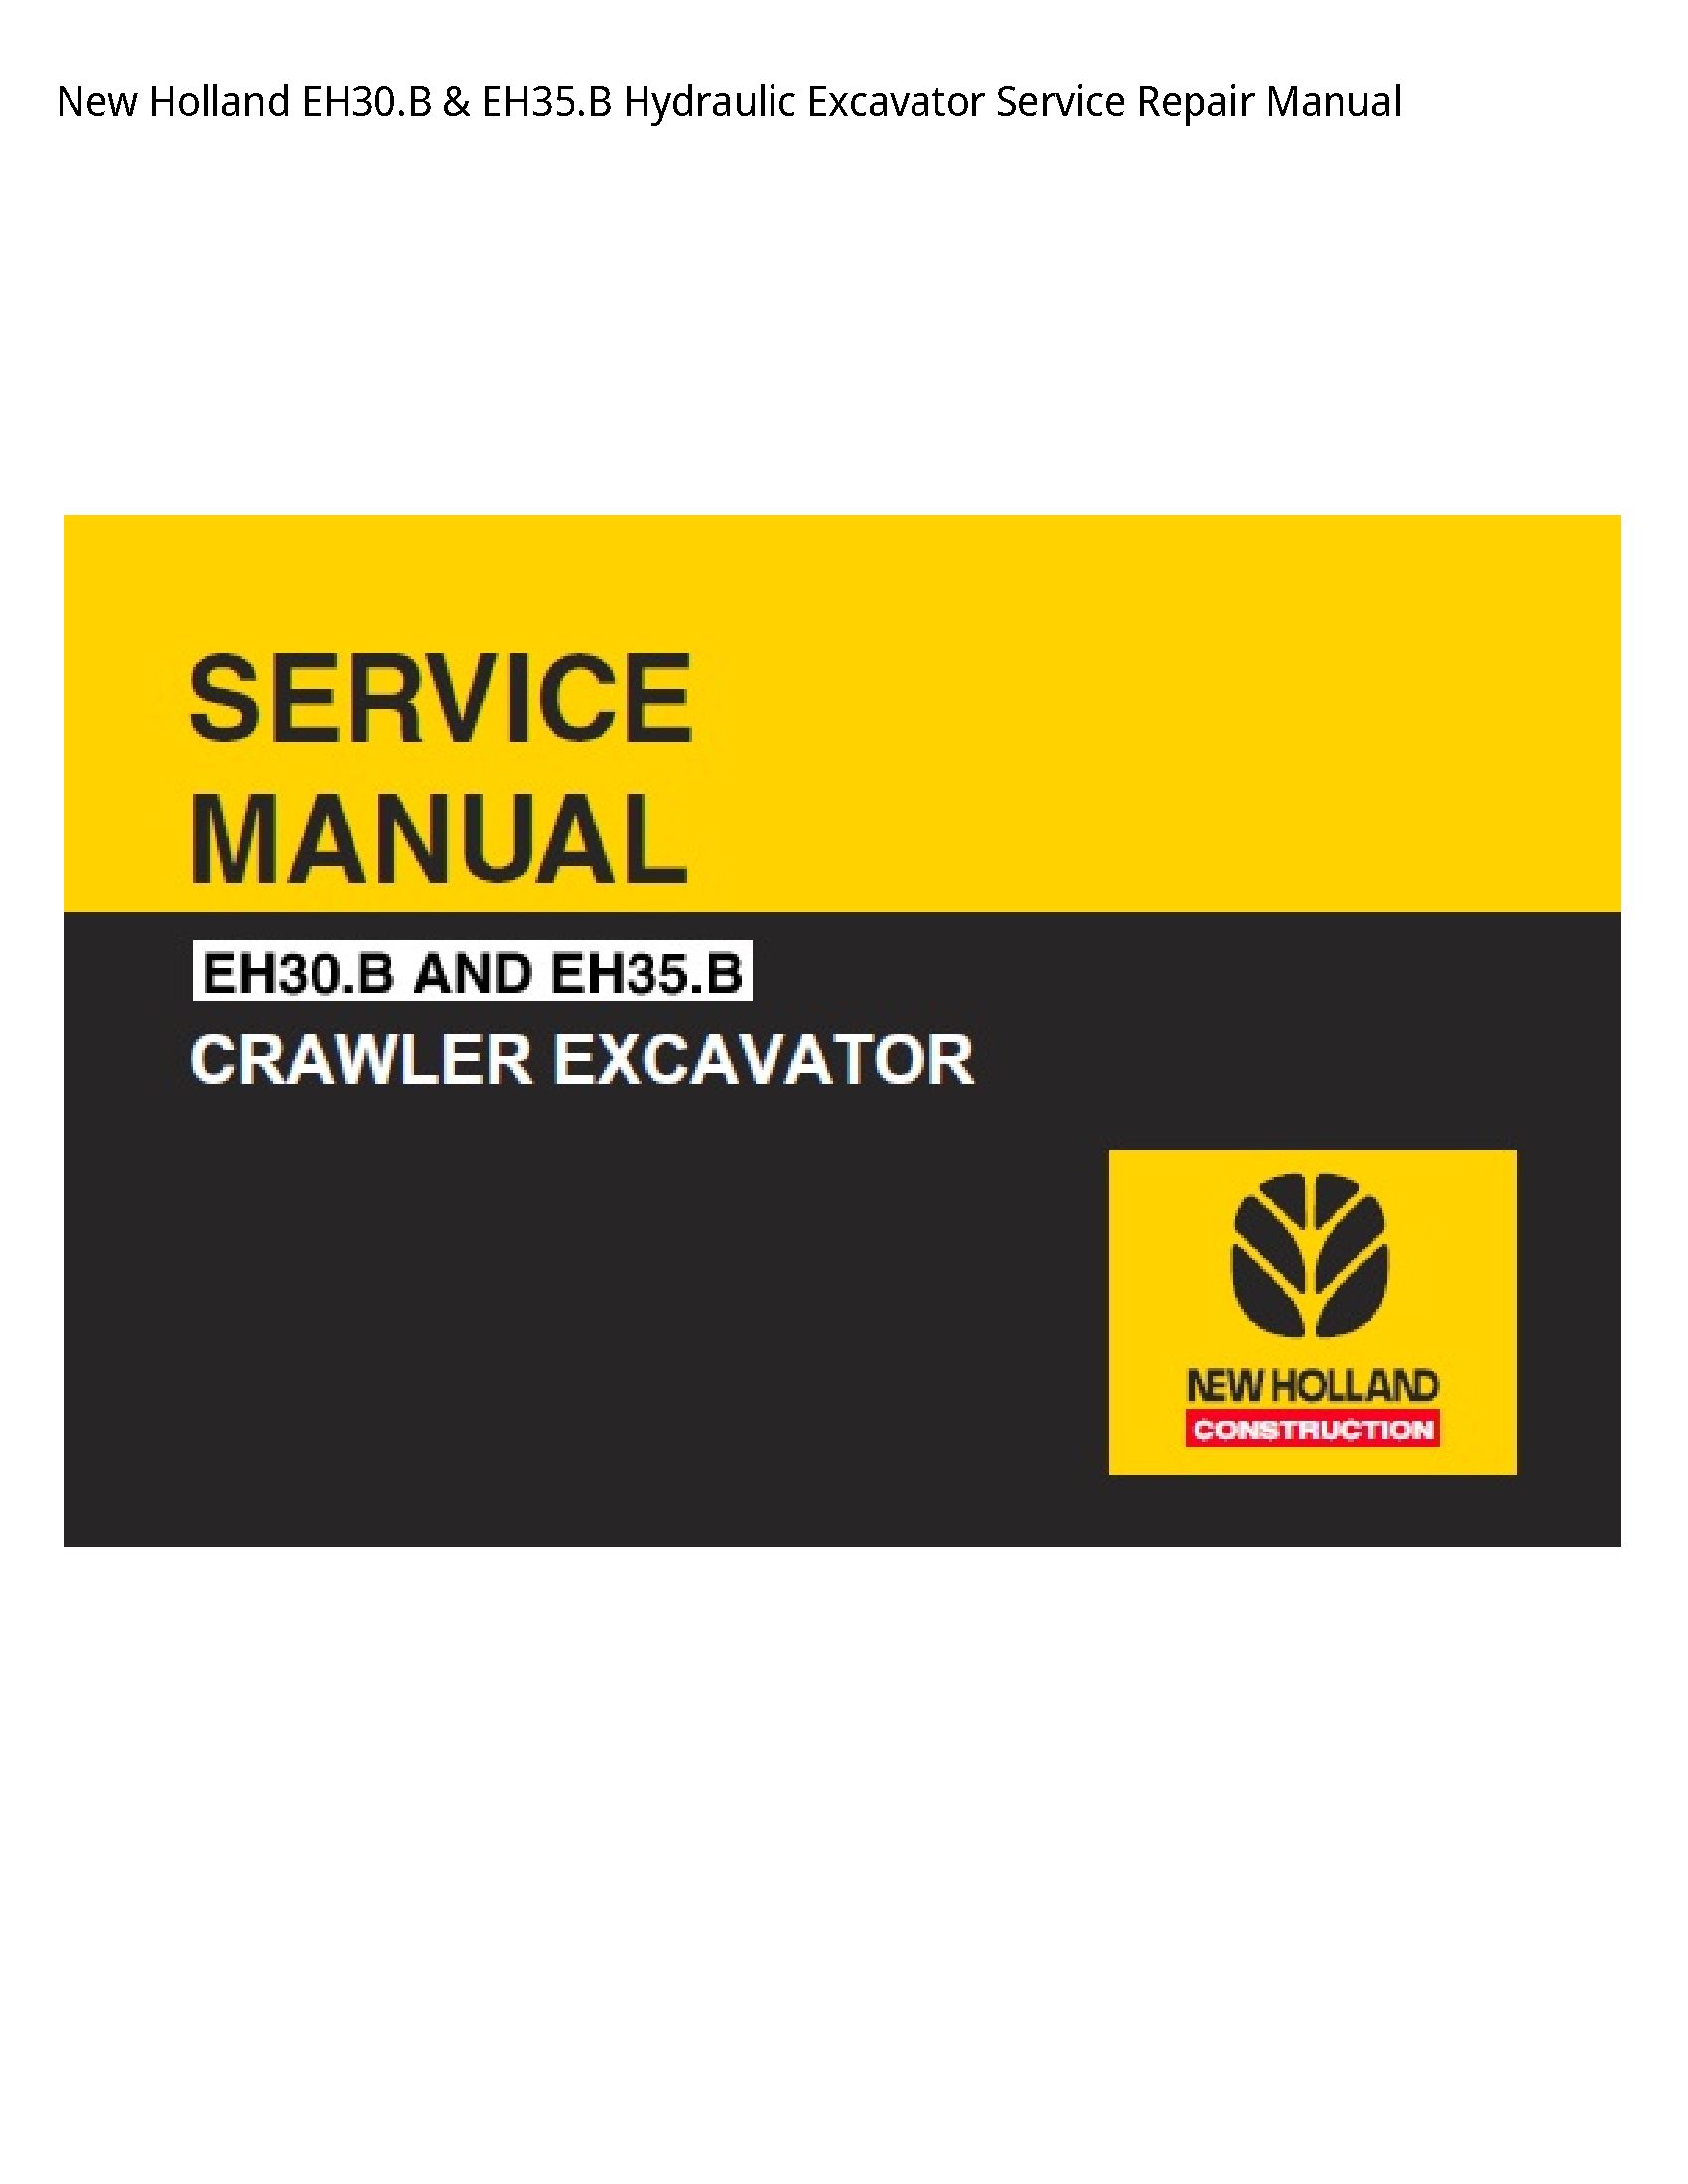 New Holland EH30.B Hydraulic Excavator manual